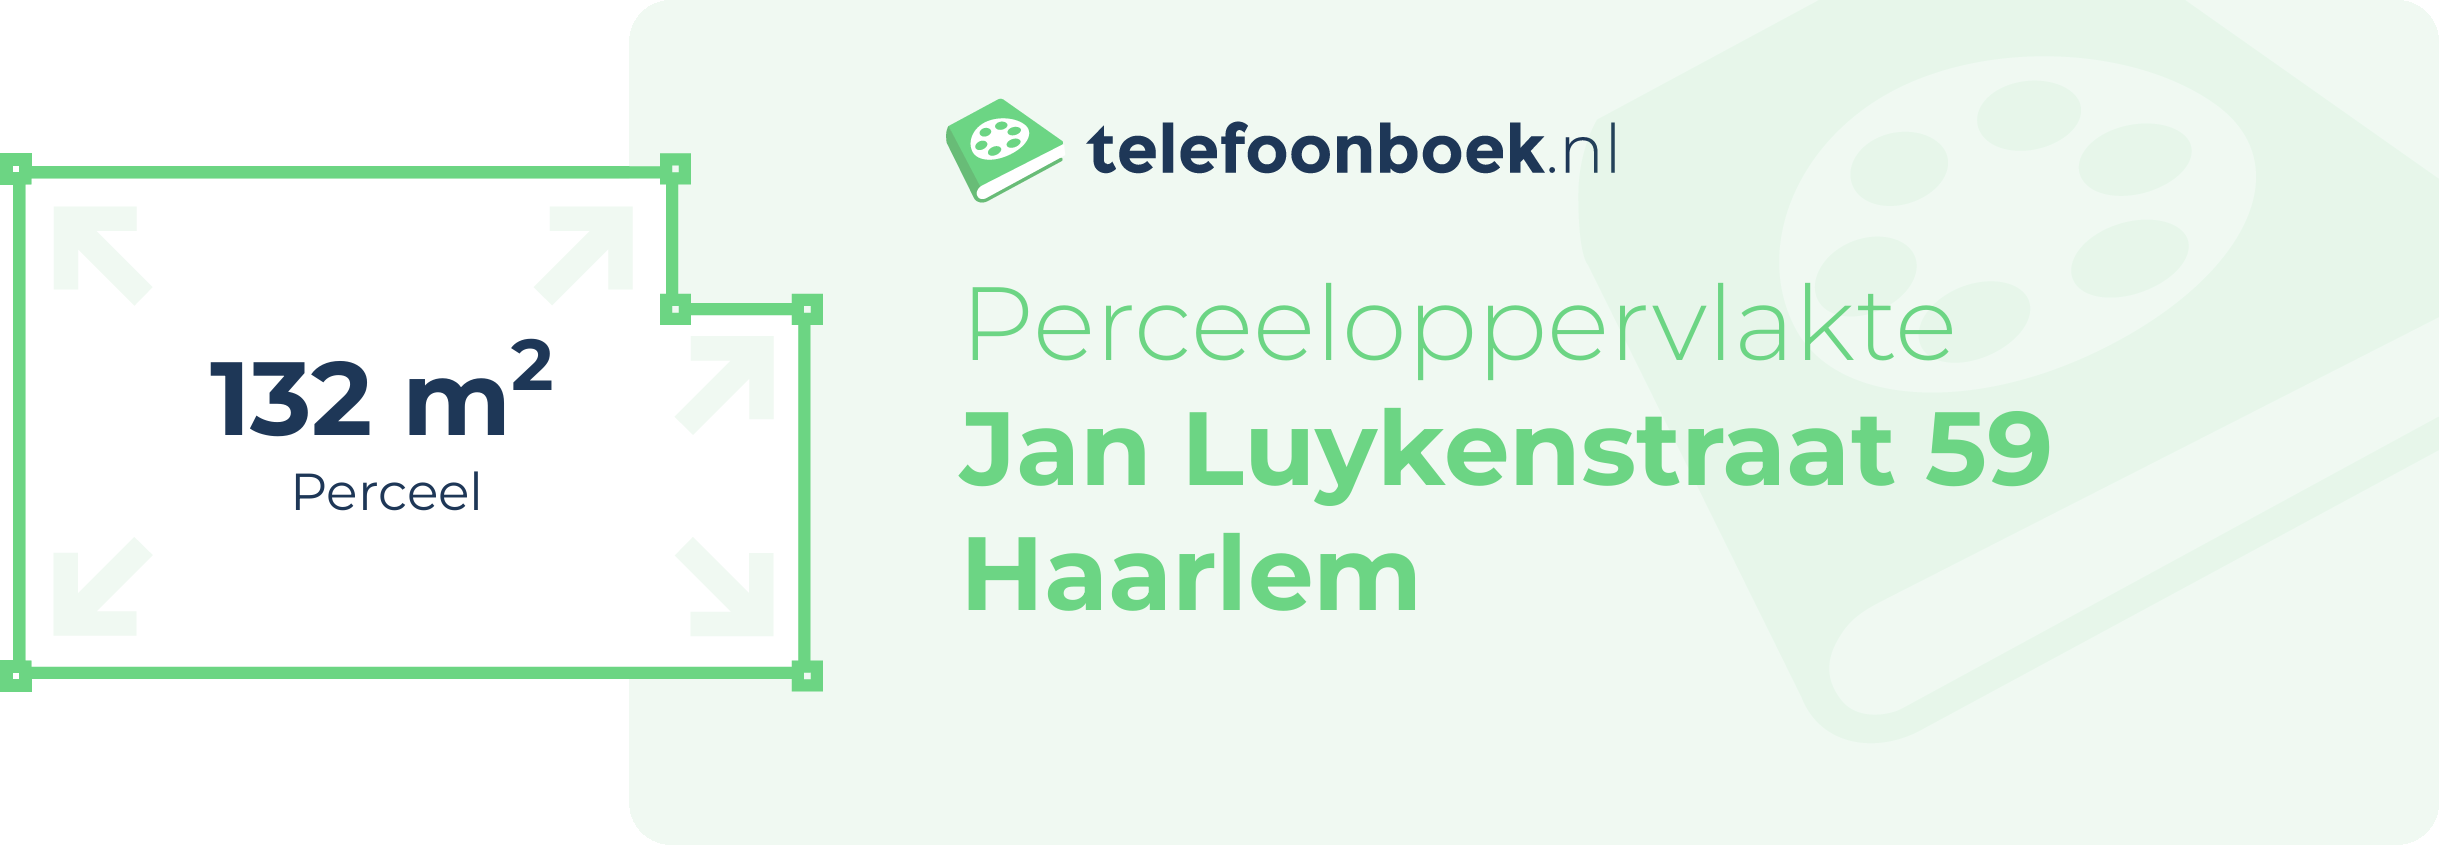 Perceeloppervlakte Jan Luykenstraat 59 Haarlem